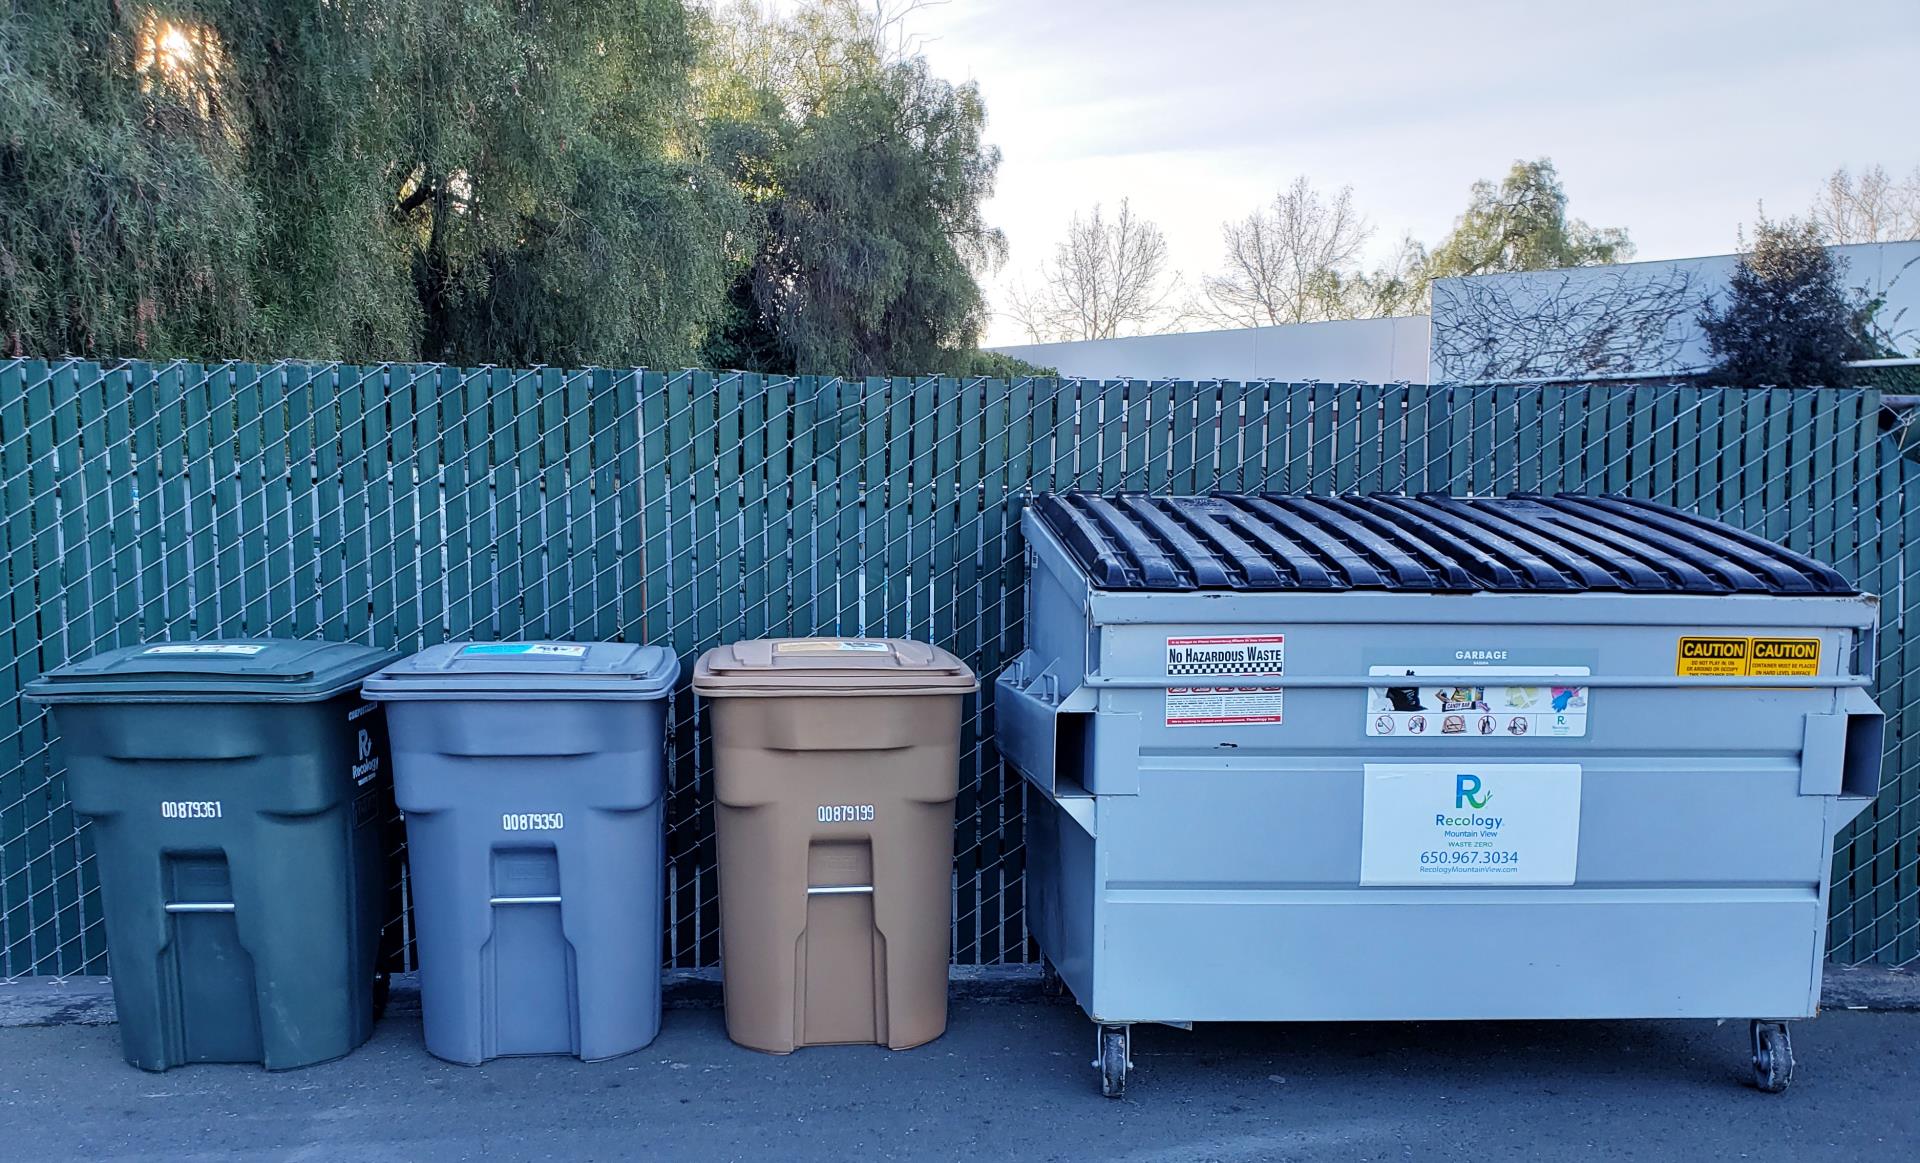 Garbage bins next to dumpster